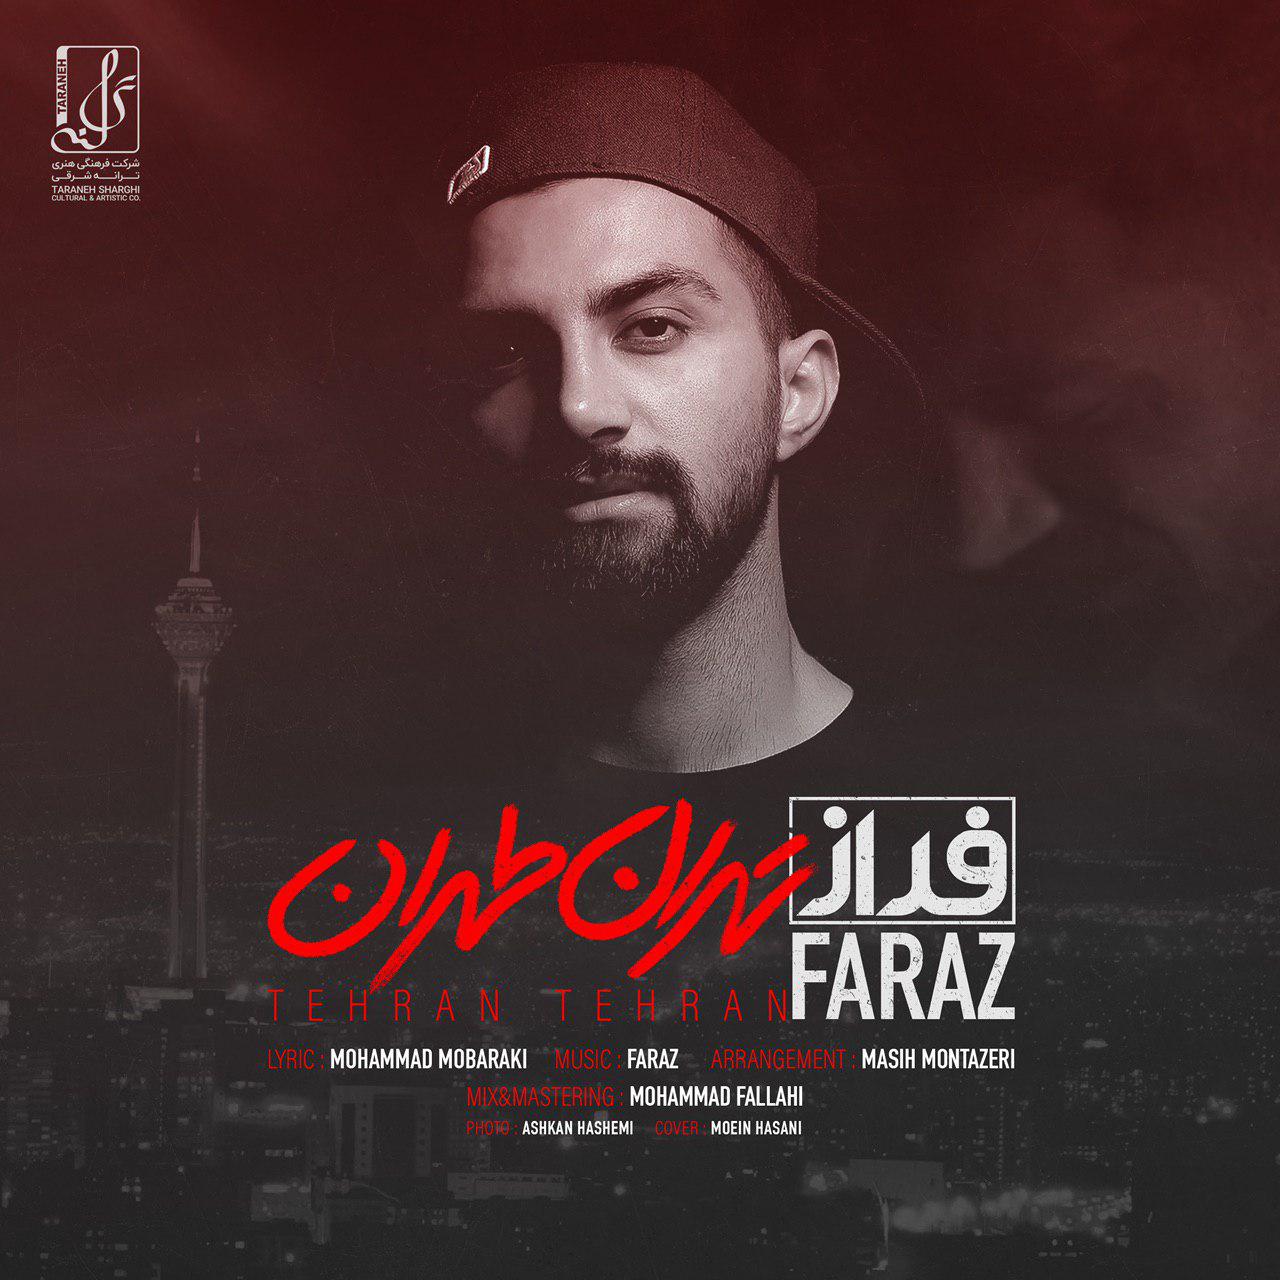  دانلود آهنگ جدید فراز - تهران طهران | Download New Music By Faraz - Tehran Tehran